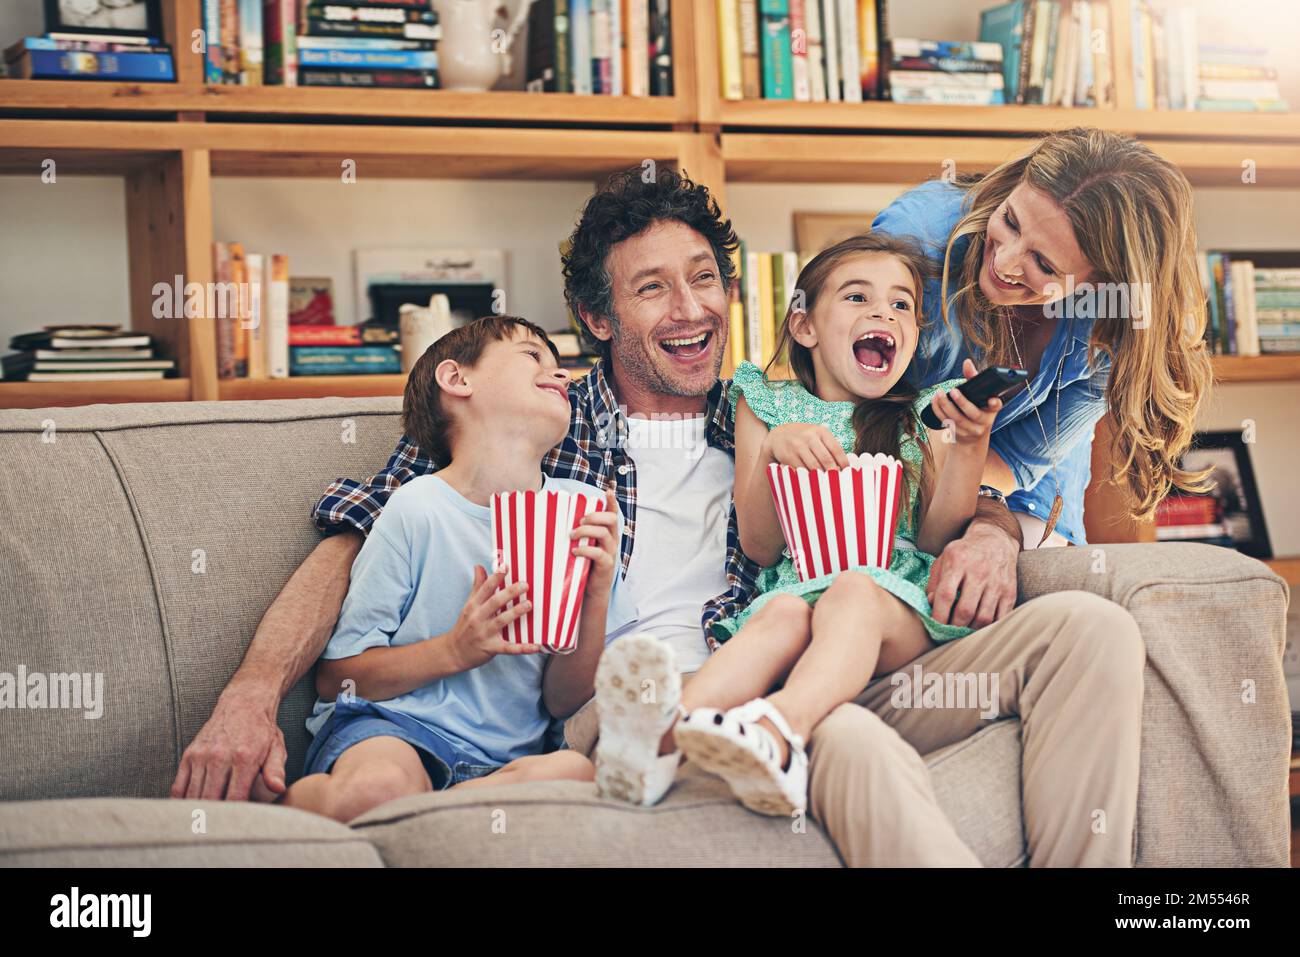 Der Filmabend hat jede Menge Spaß gemacht. Eine glückliche Familie, die sich zu Hause Filme auf dem Sofa ansieht. Stockfoto